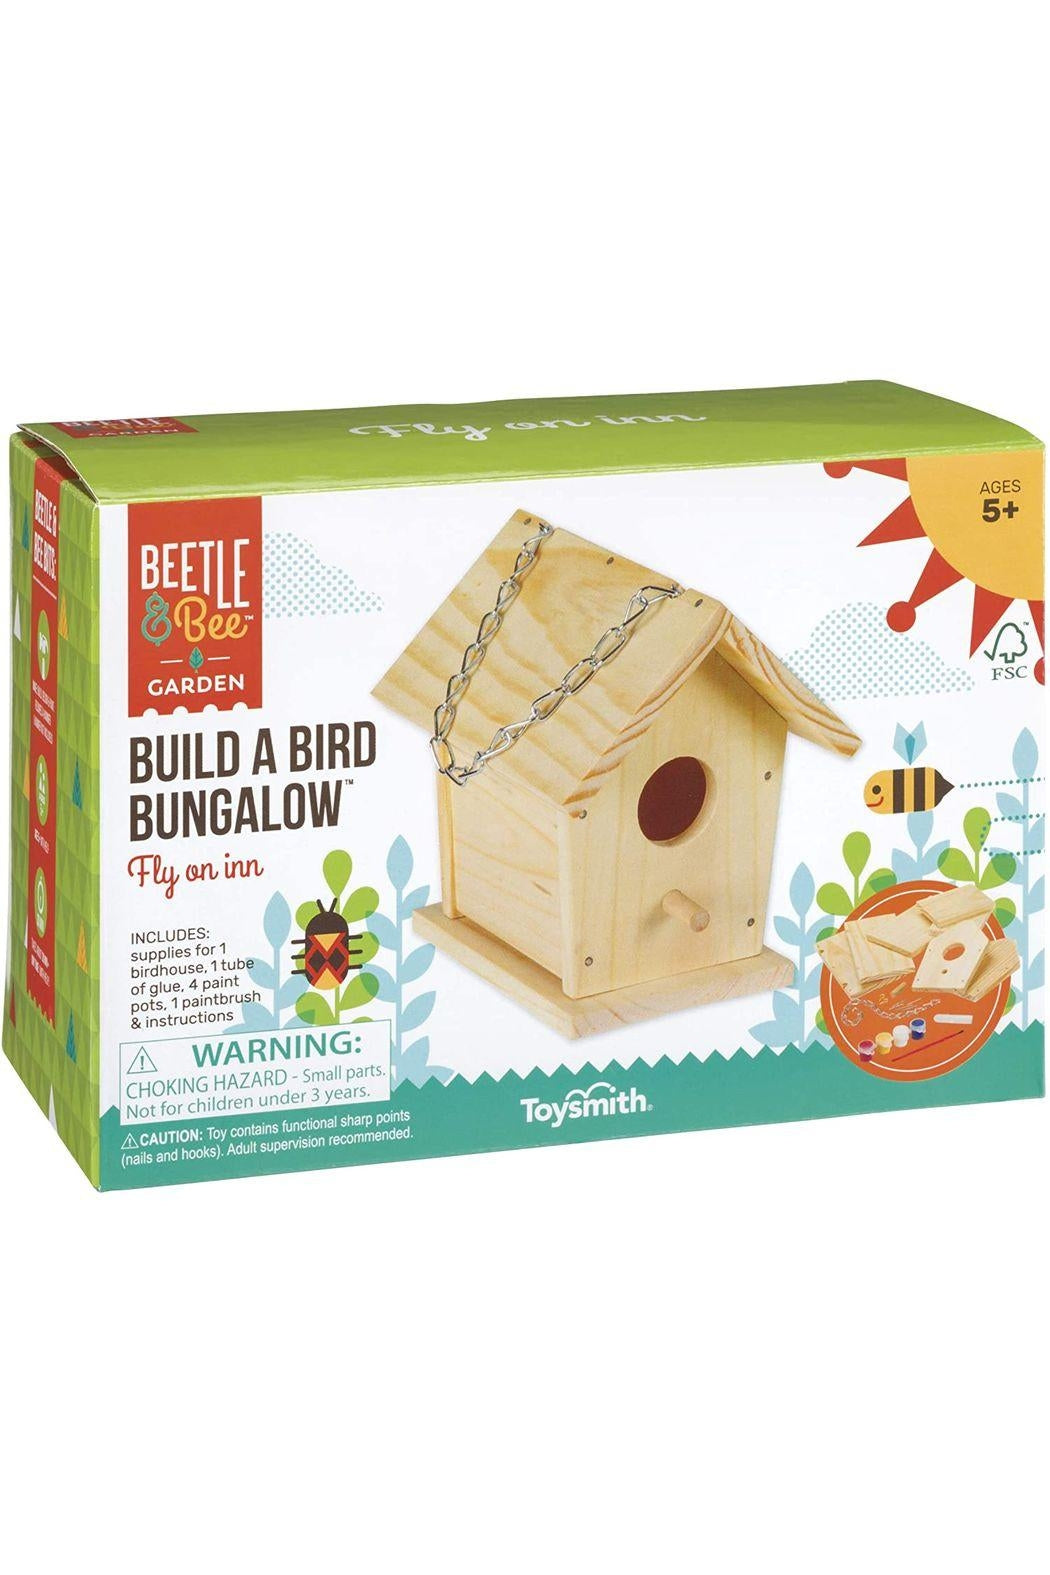 Build A Bird Bungalow